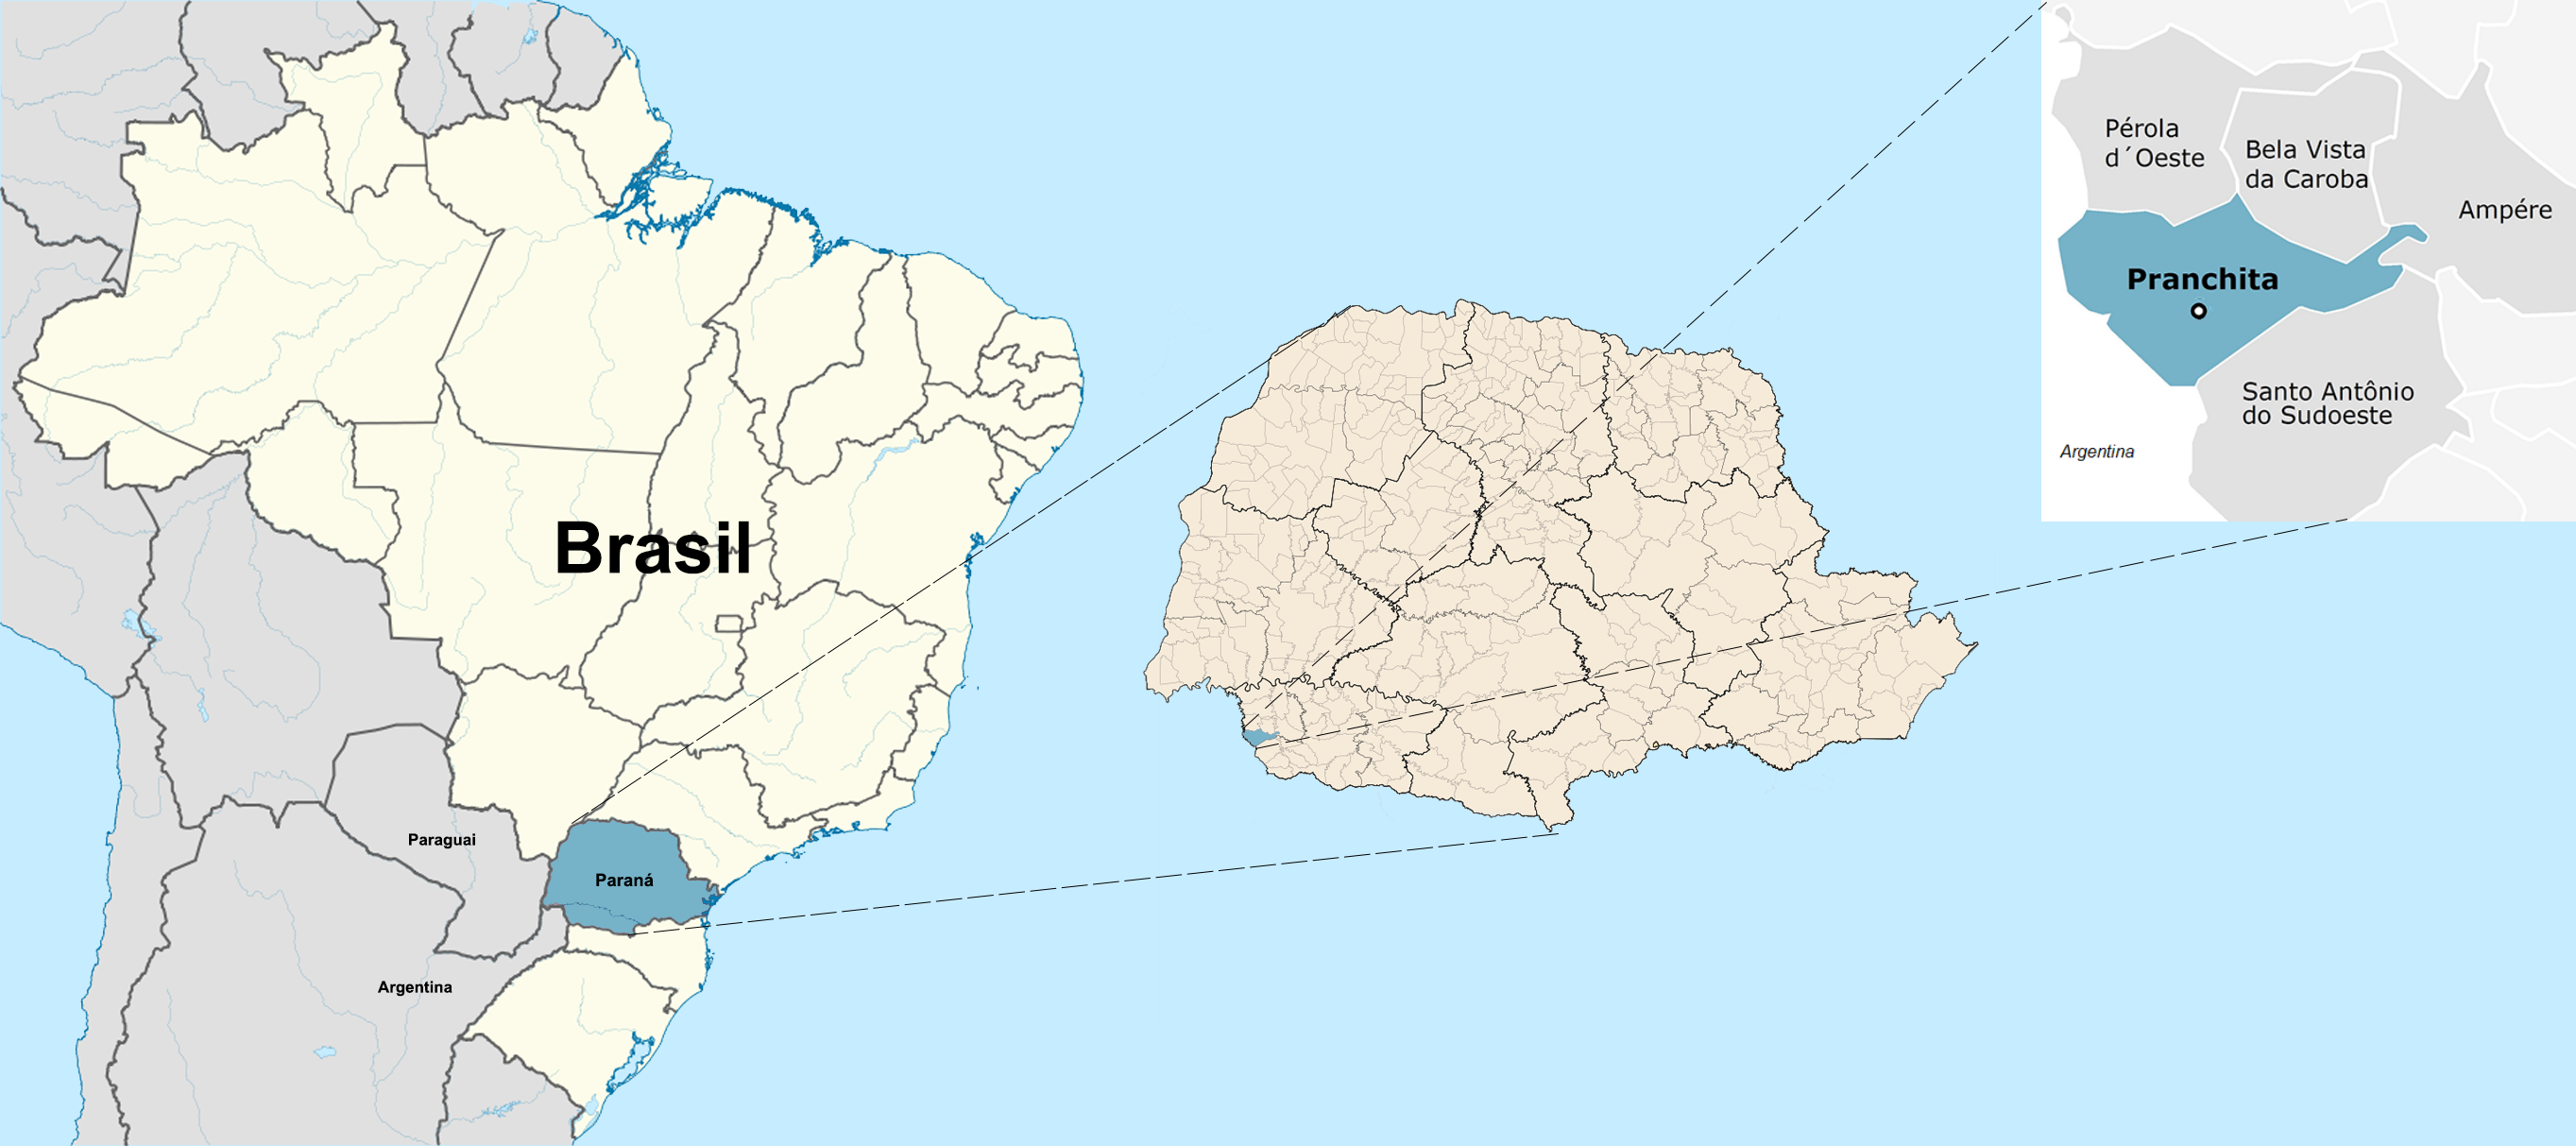 Mapa de localización de la ciudad
de Pranchita-PR